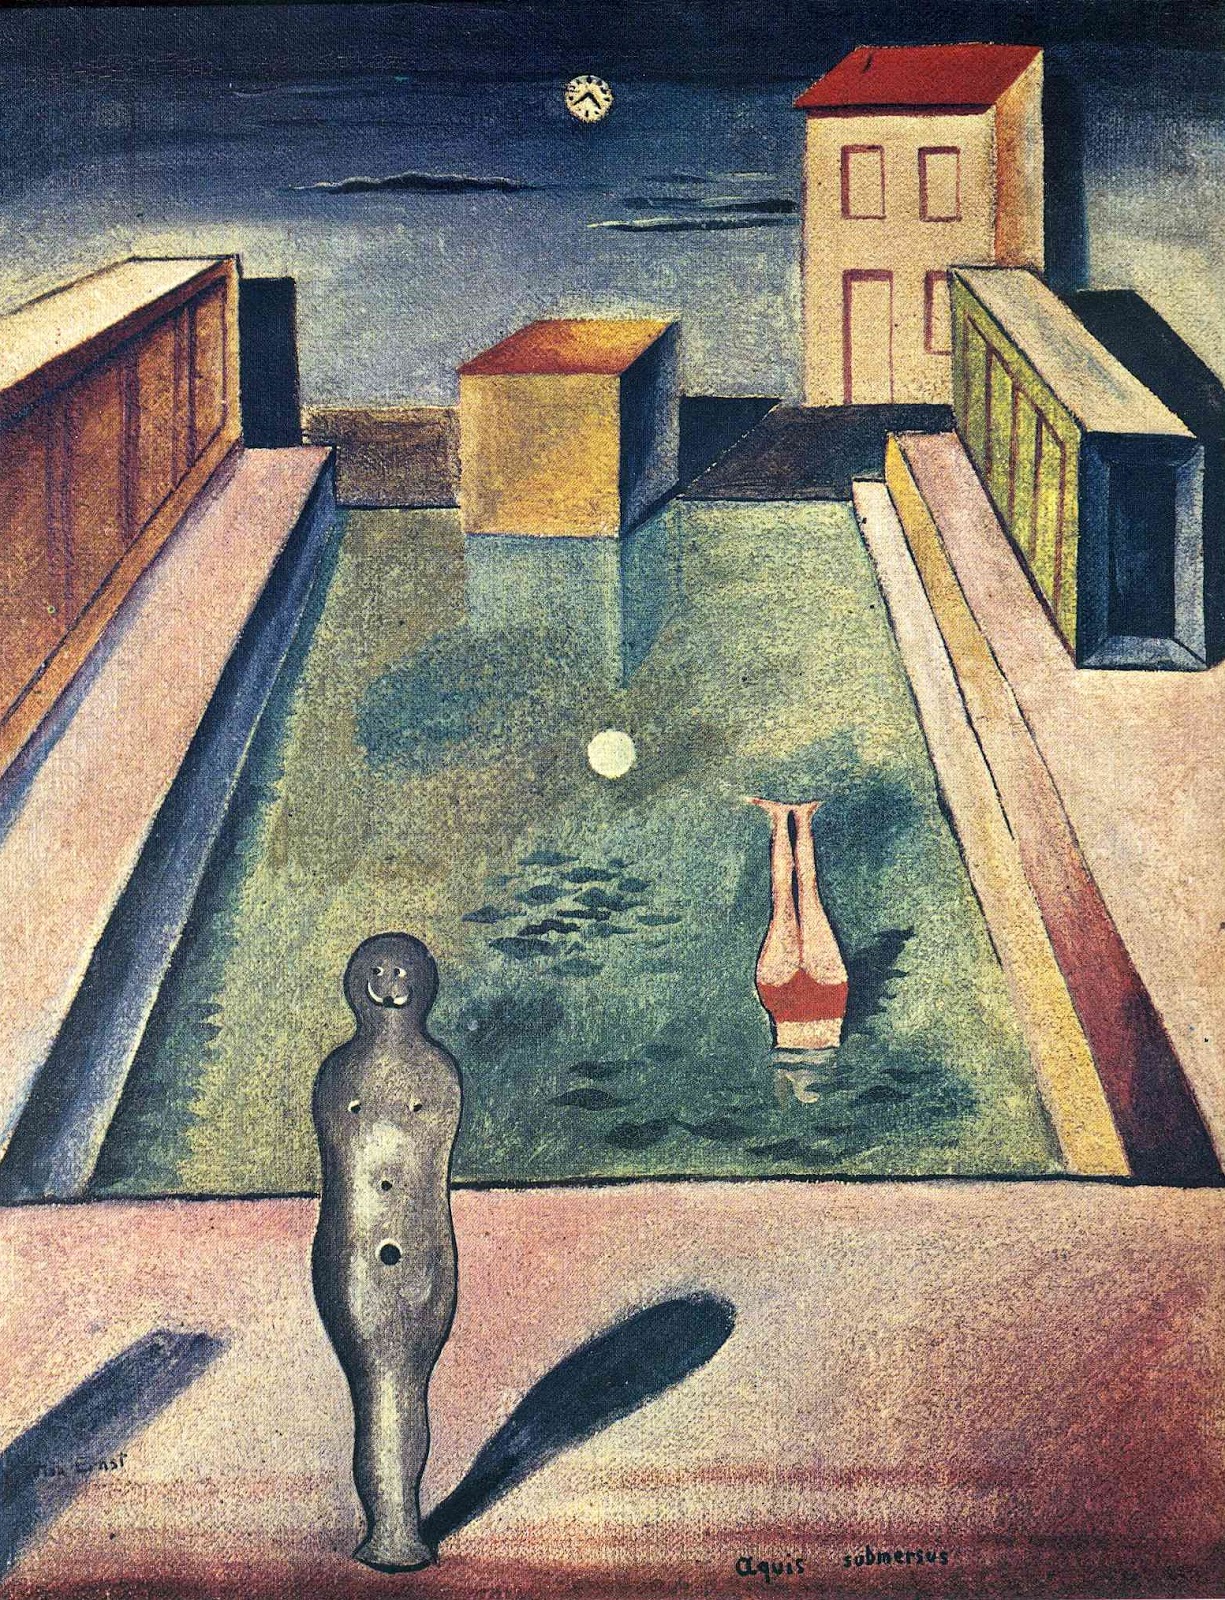 Max+Ernst-1891-1976 (71).jpg